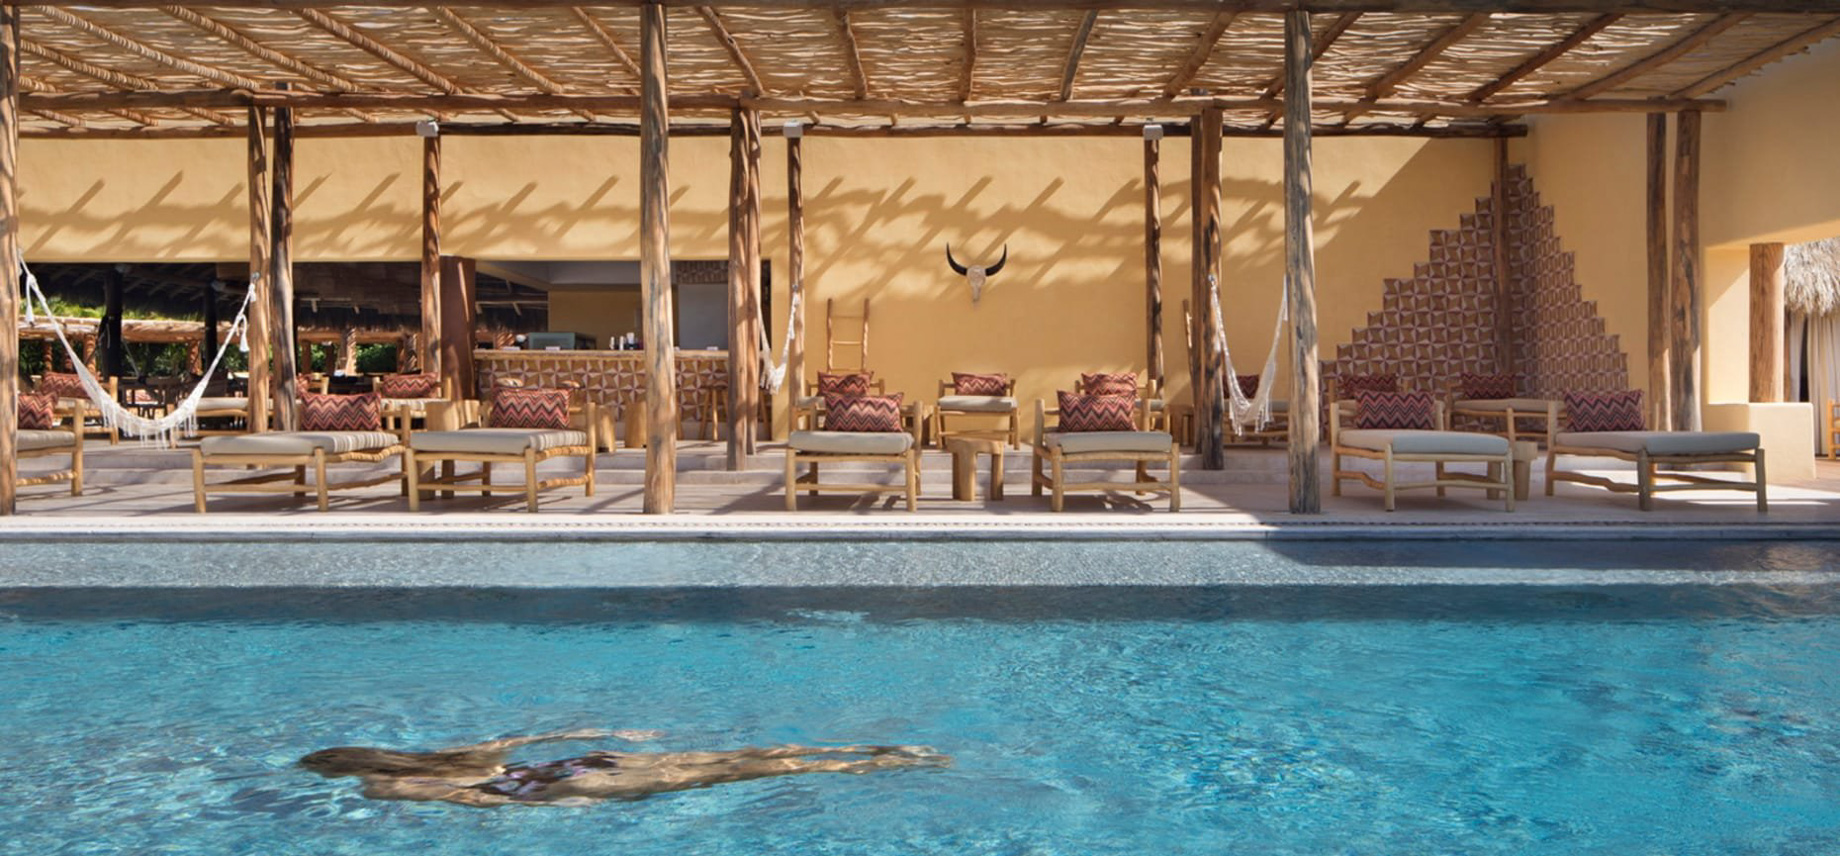 Four Seasons Resort Punta Mita – Nayarit, Mexico – Resort Pool Deck Swimming